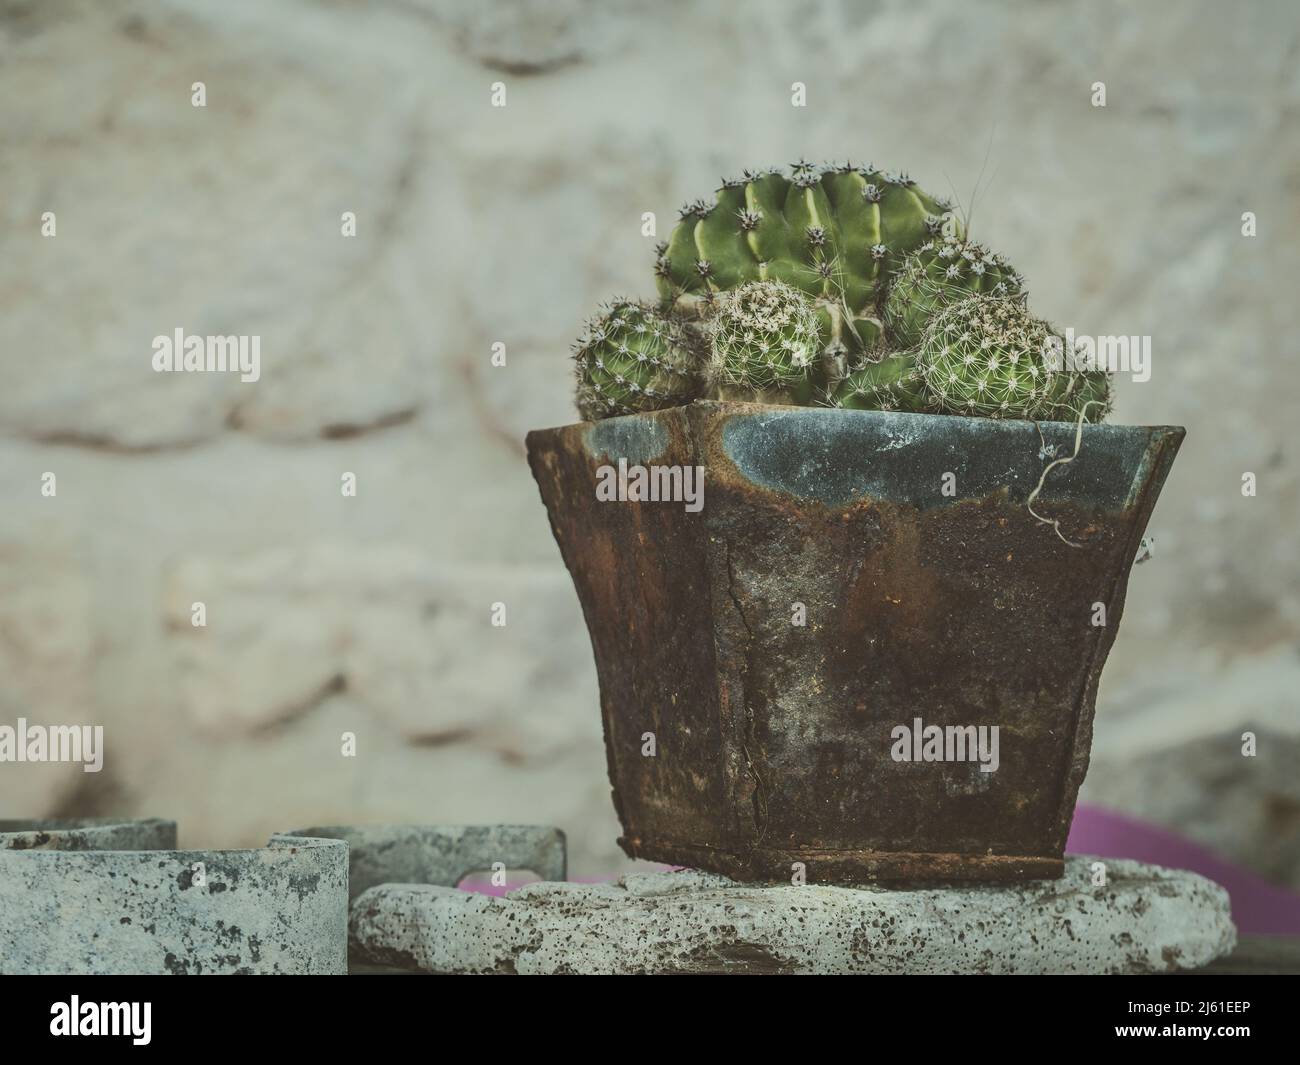 la foto moody muestra cactus en macetas rústicas de época oxidada frente a  la pared de piedra Fotografía de stock - Alamy